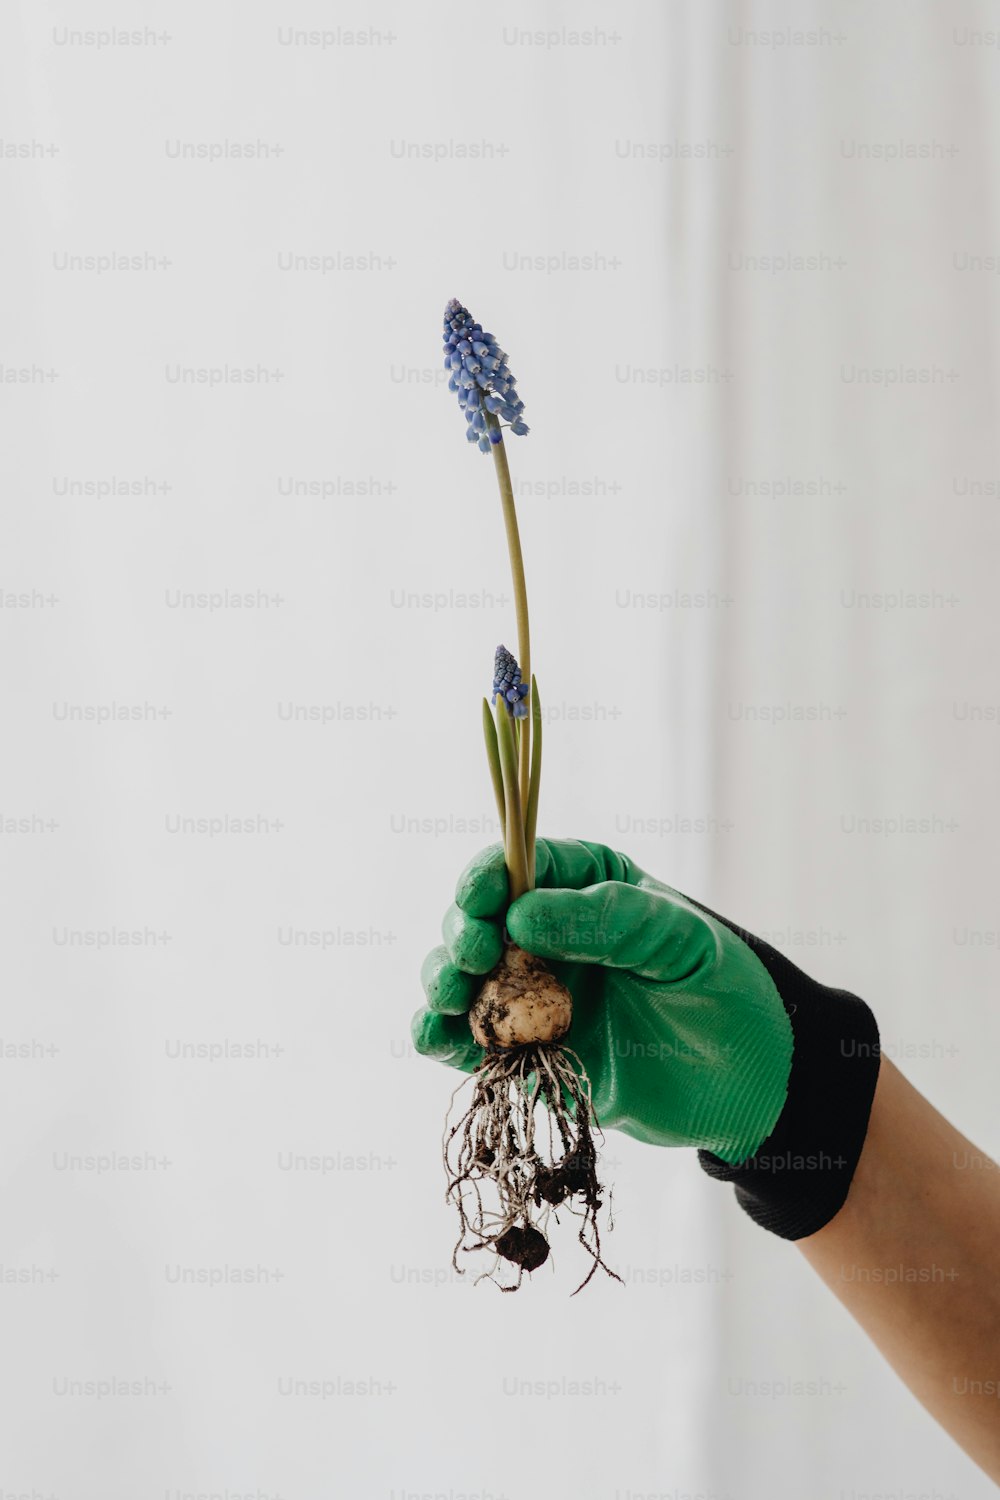 Una persona con guantes verdes sosteniendo una planta con raíces